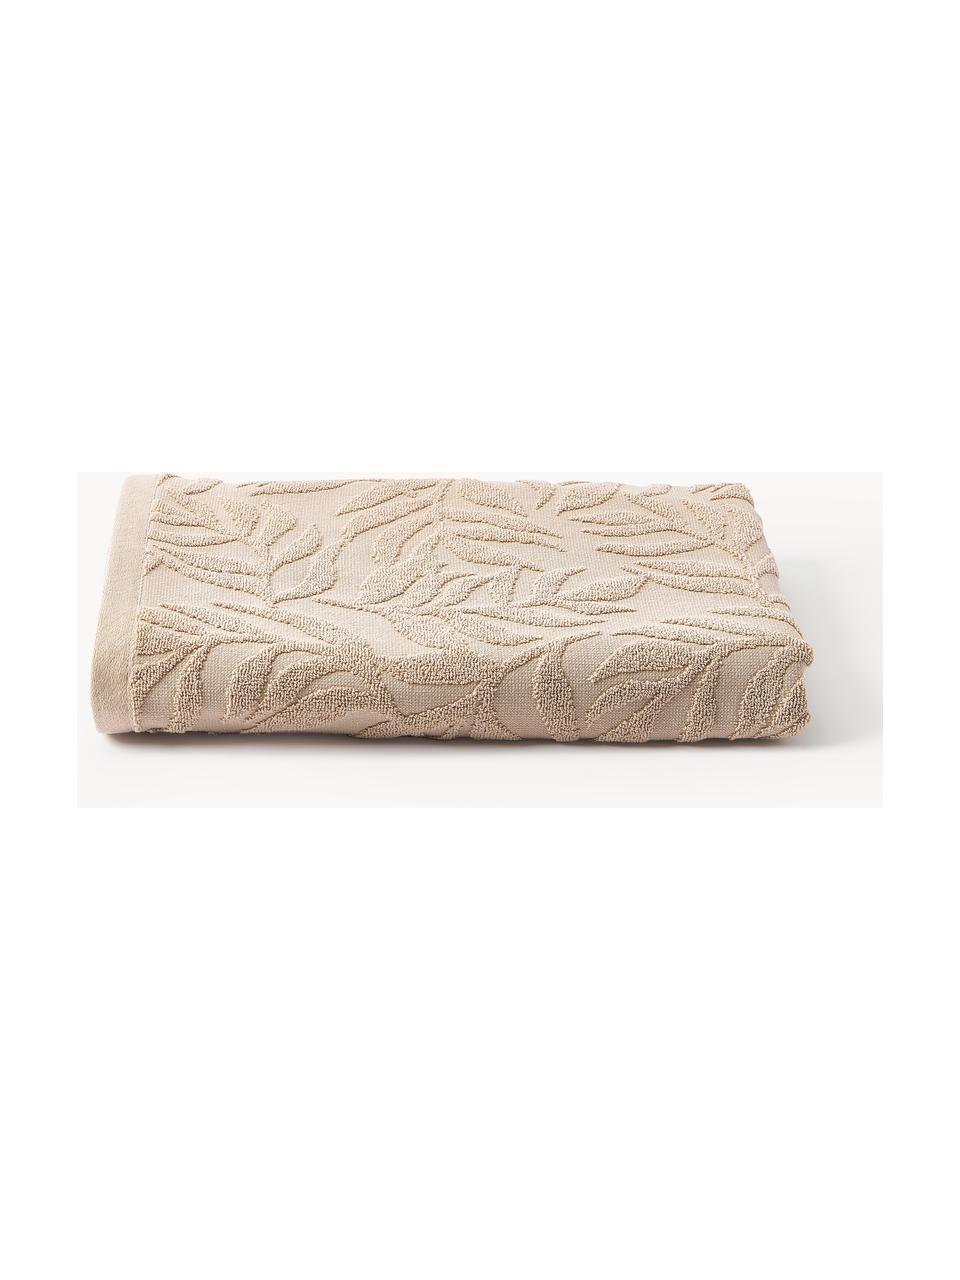 Ręcznik z bawełny Leaf, różne rozmiary, Beżowy, Ręcznik, S 50 x D 100 cm, 2 szt.